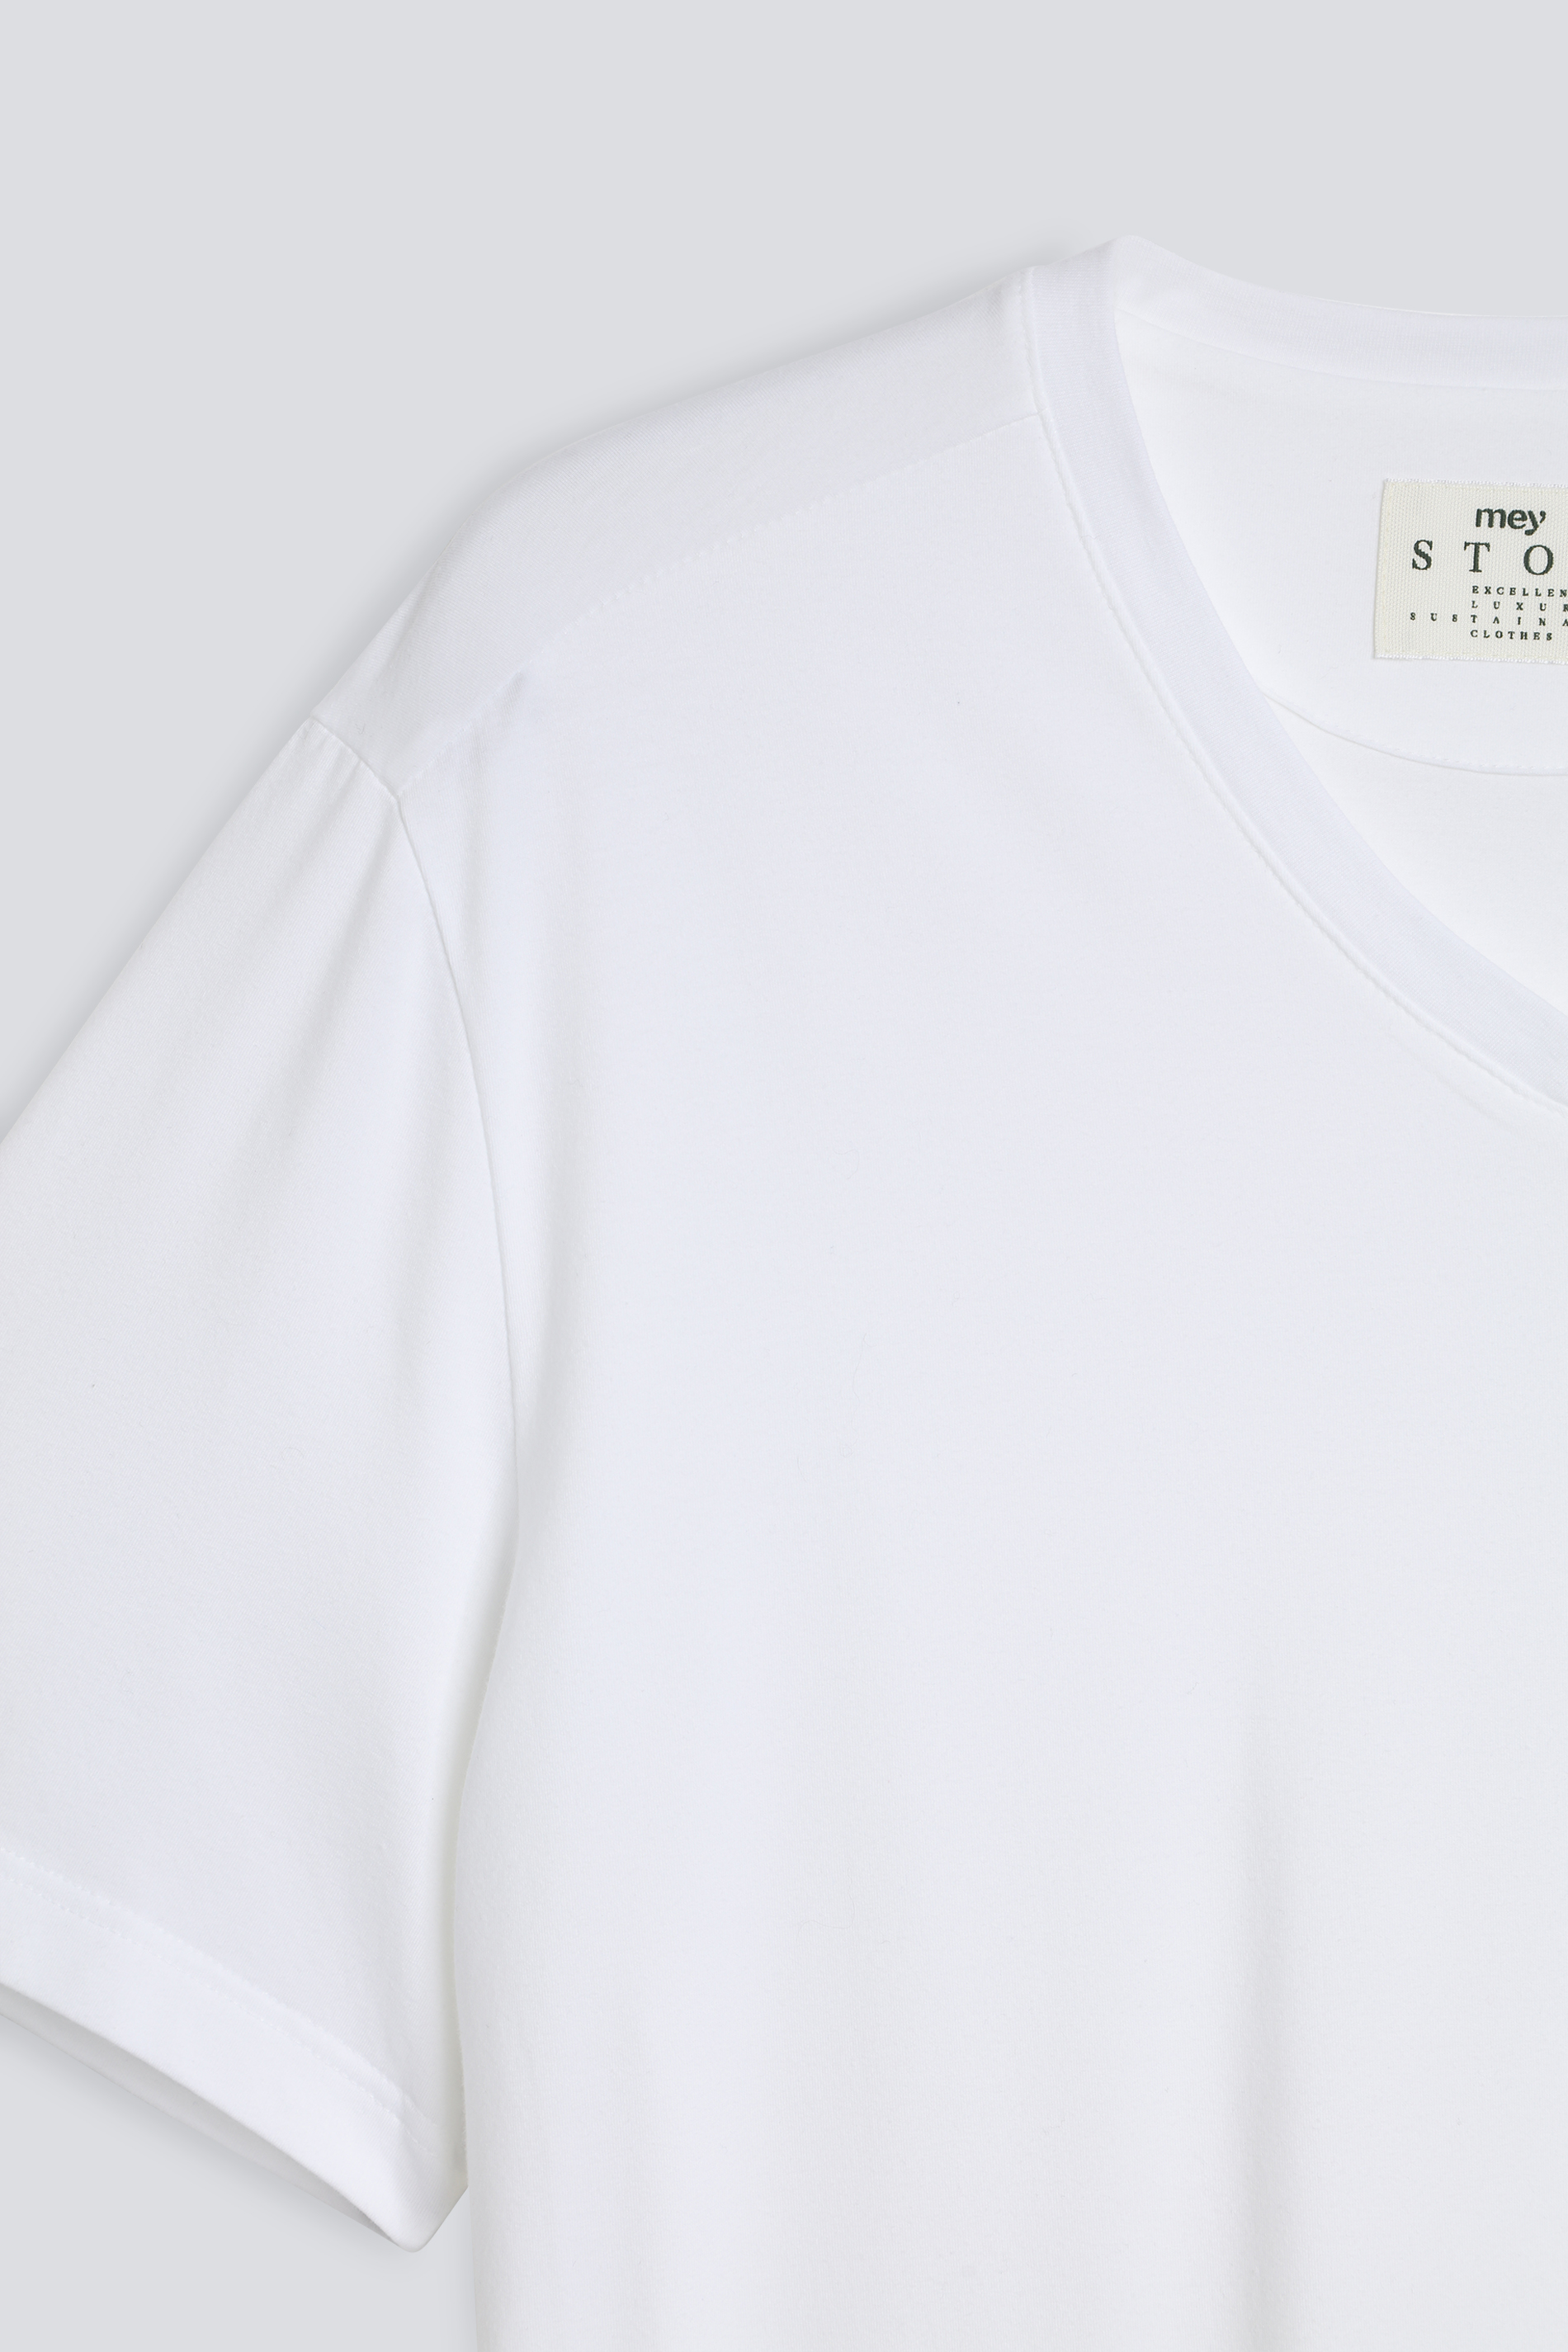 T-shirt Serie Cotone Strech Detailweergave 01 | mey®